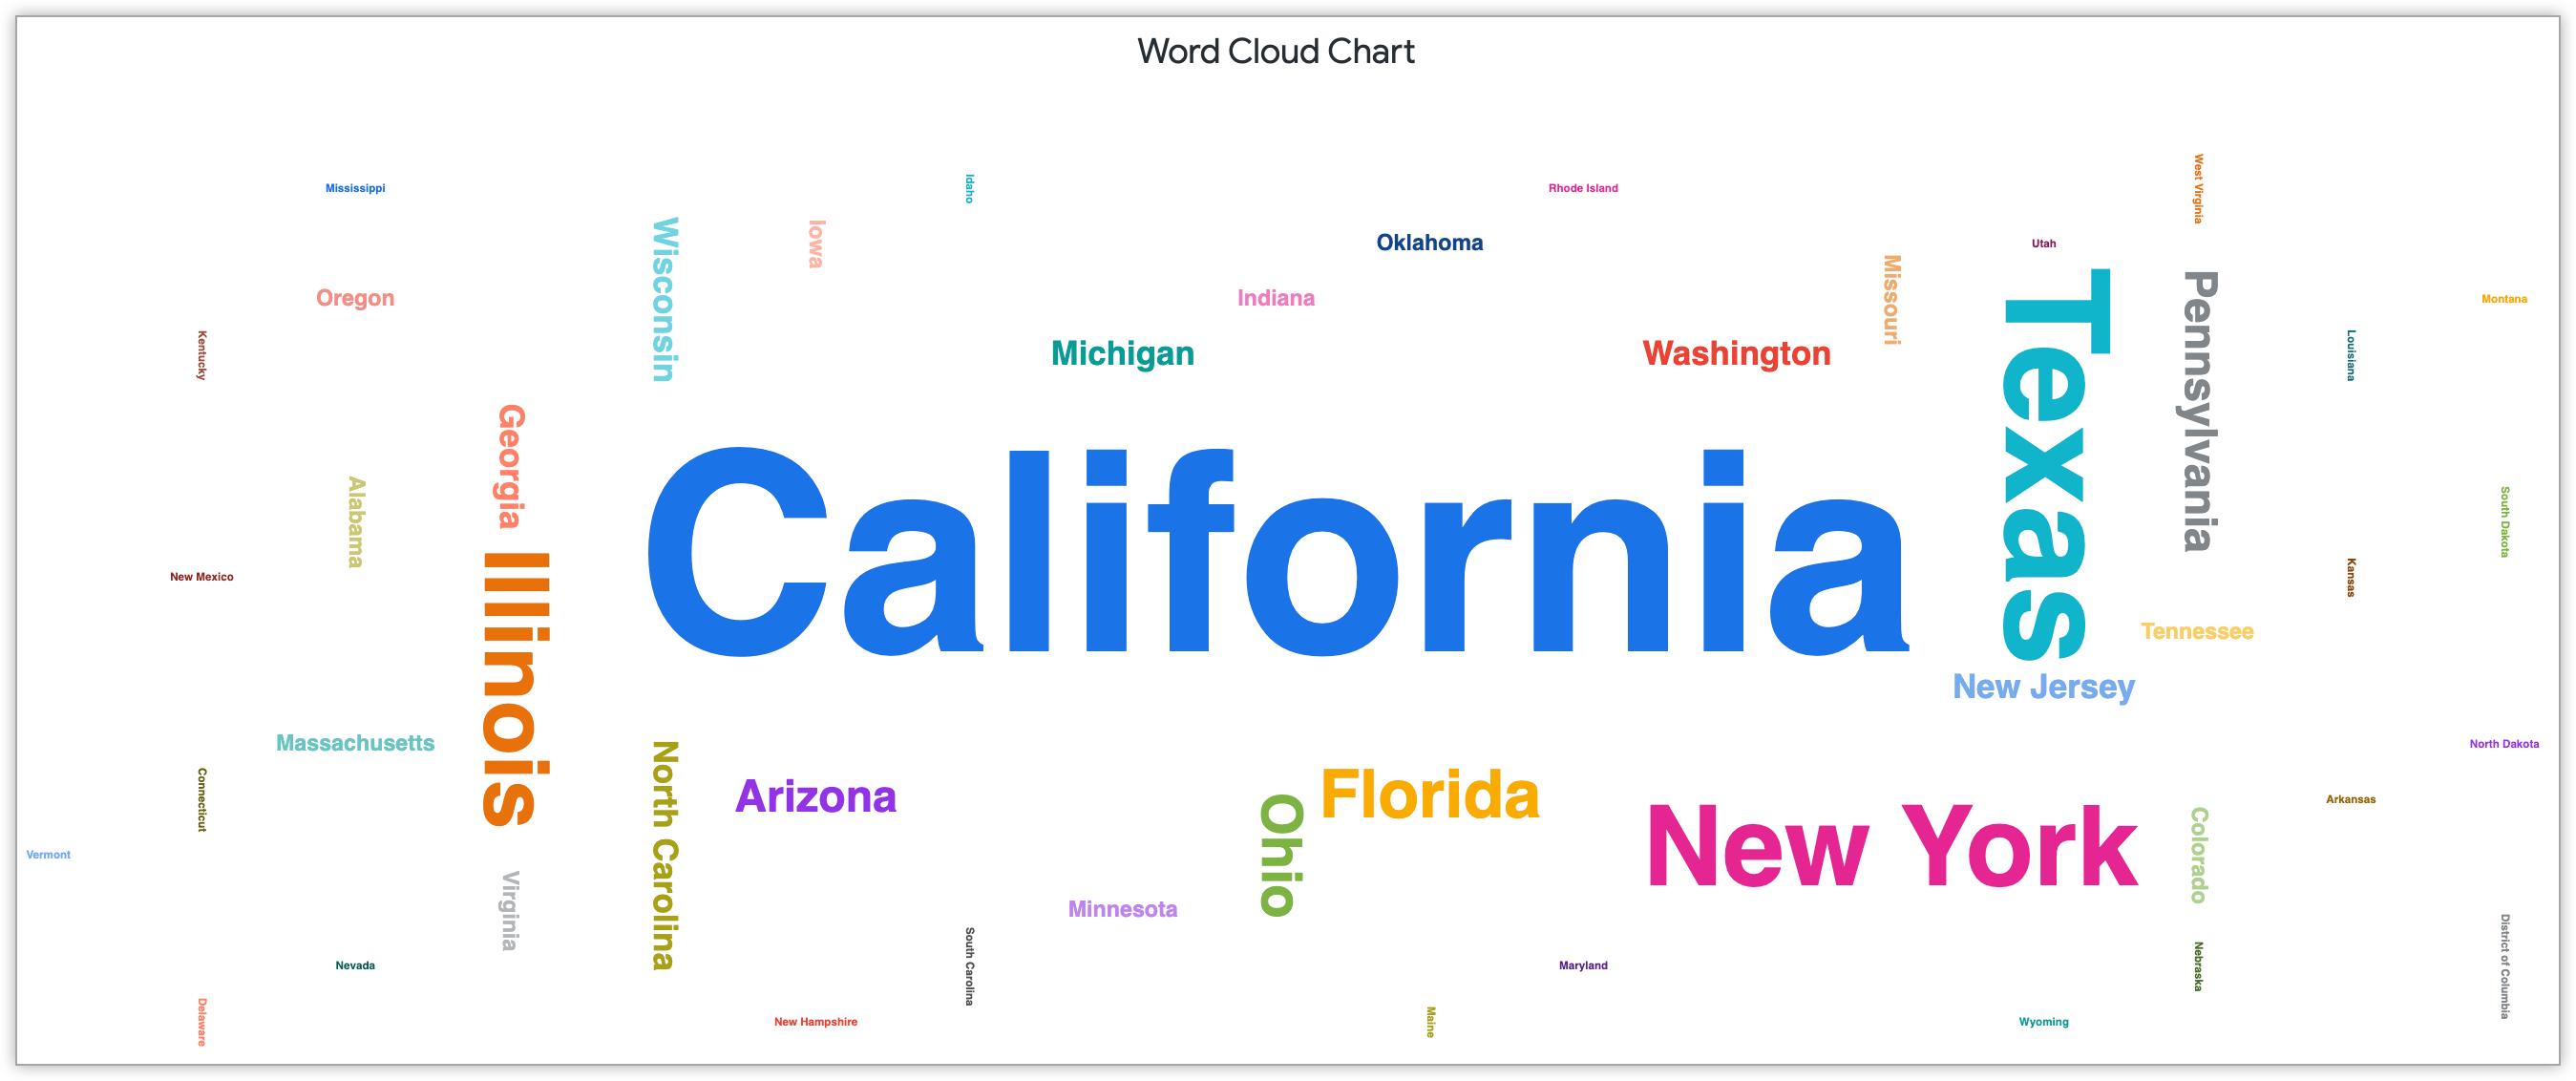 Grafico a nuvola di parole che mostra i nomi degli stati ridimensionati in base al numero di clienti in quello stato.